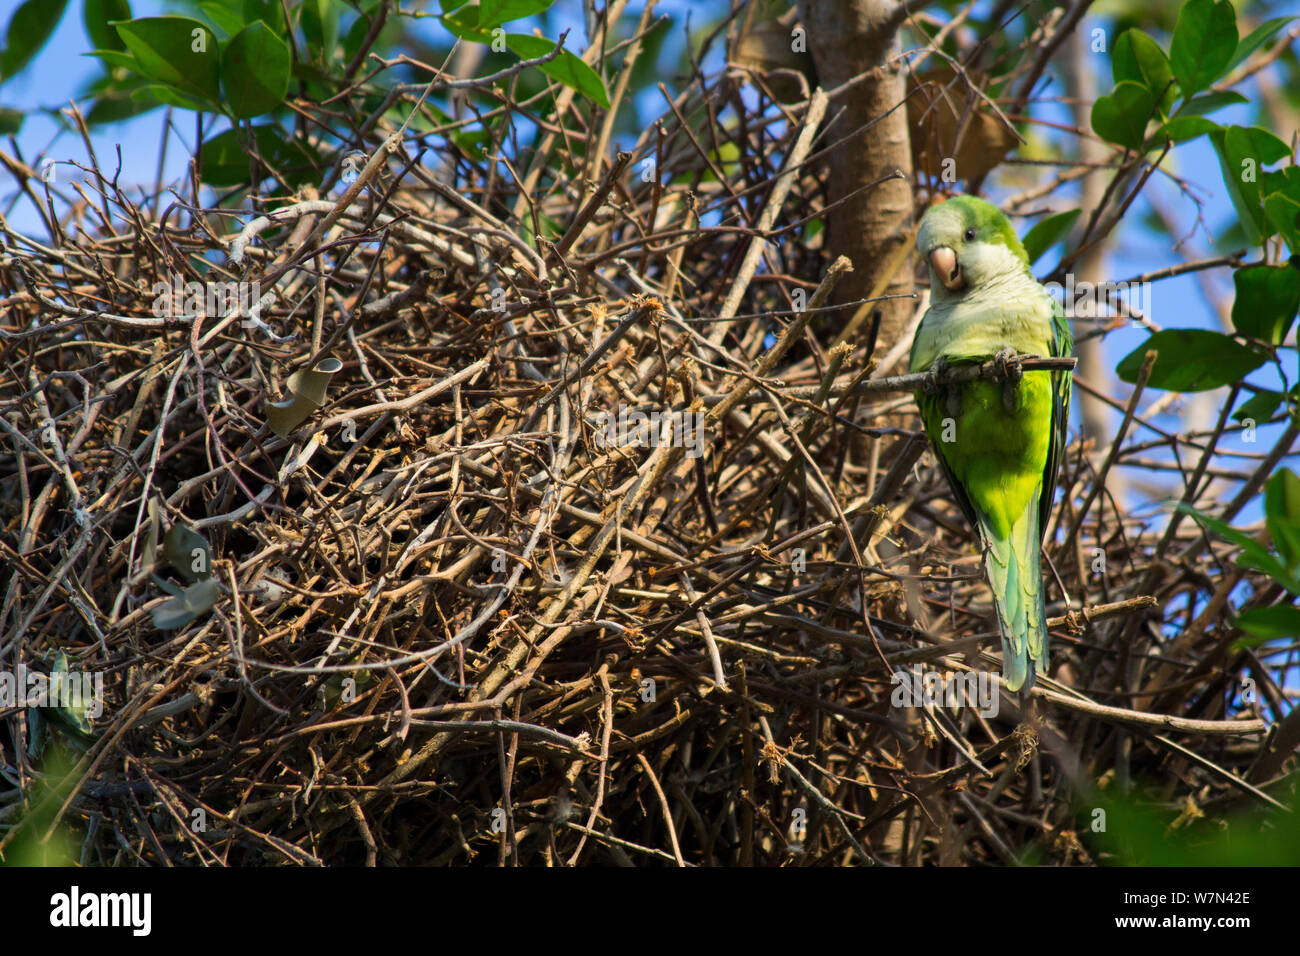 Perruche moine (Myiopsitta monachus) au nid, Pantanal, Pocone, Brésil Banque D'Images